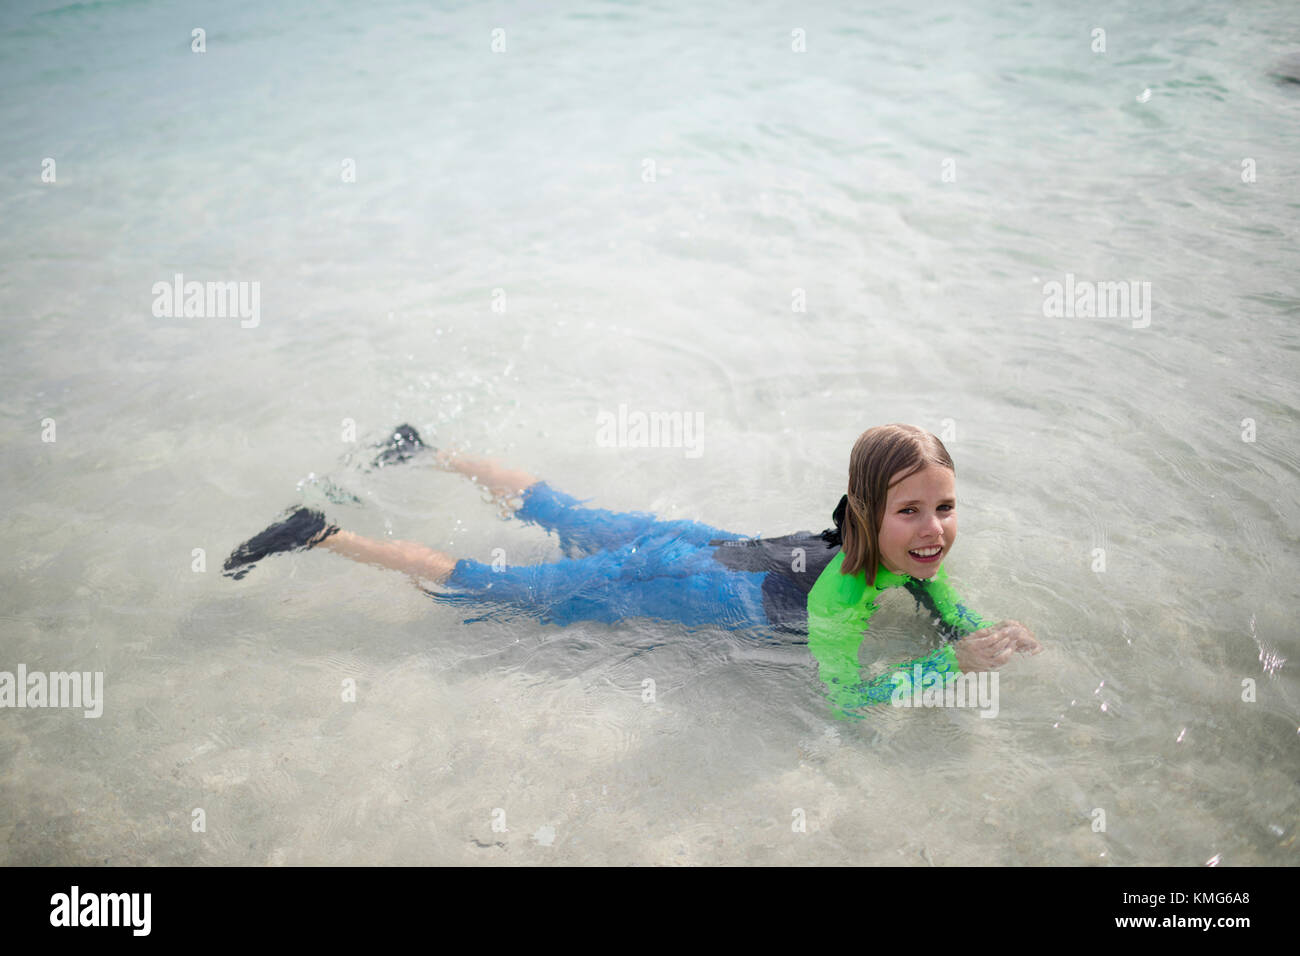 Porträt eines Mädchens im Neoprenanzug, das auf dem Wasser schwimmt Stockfoto